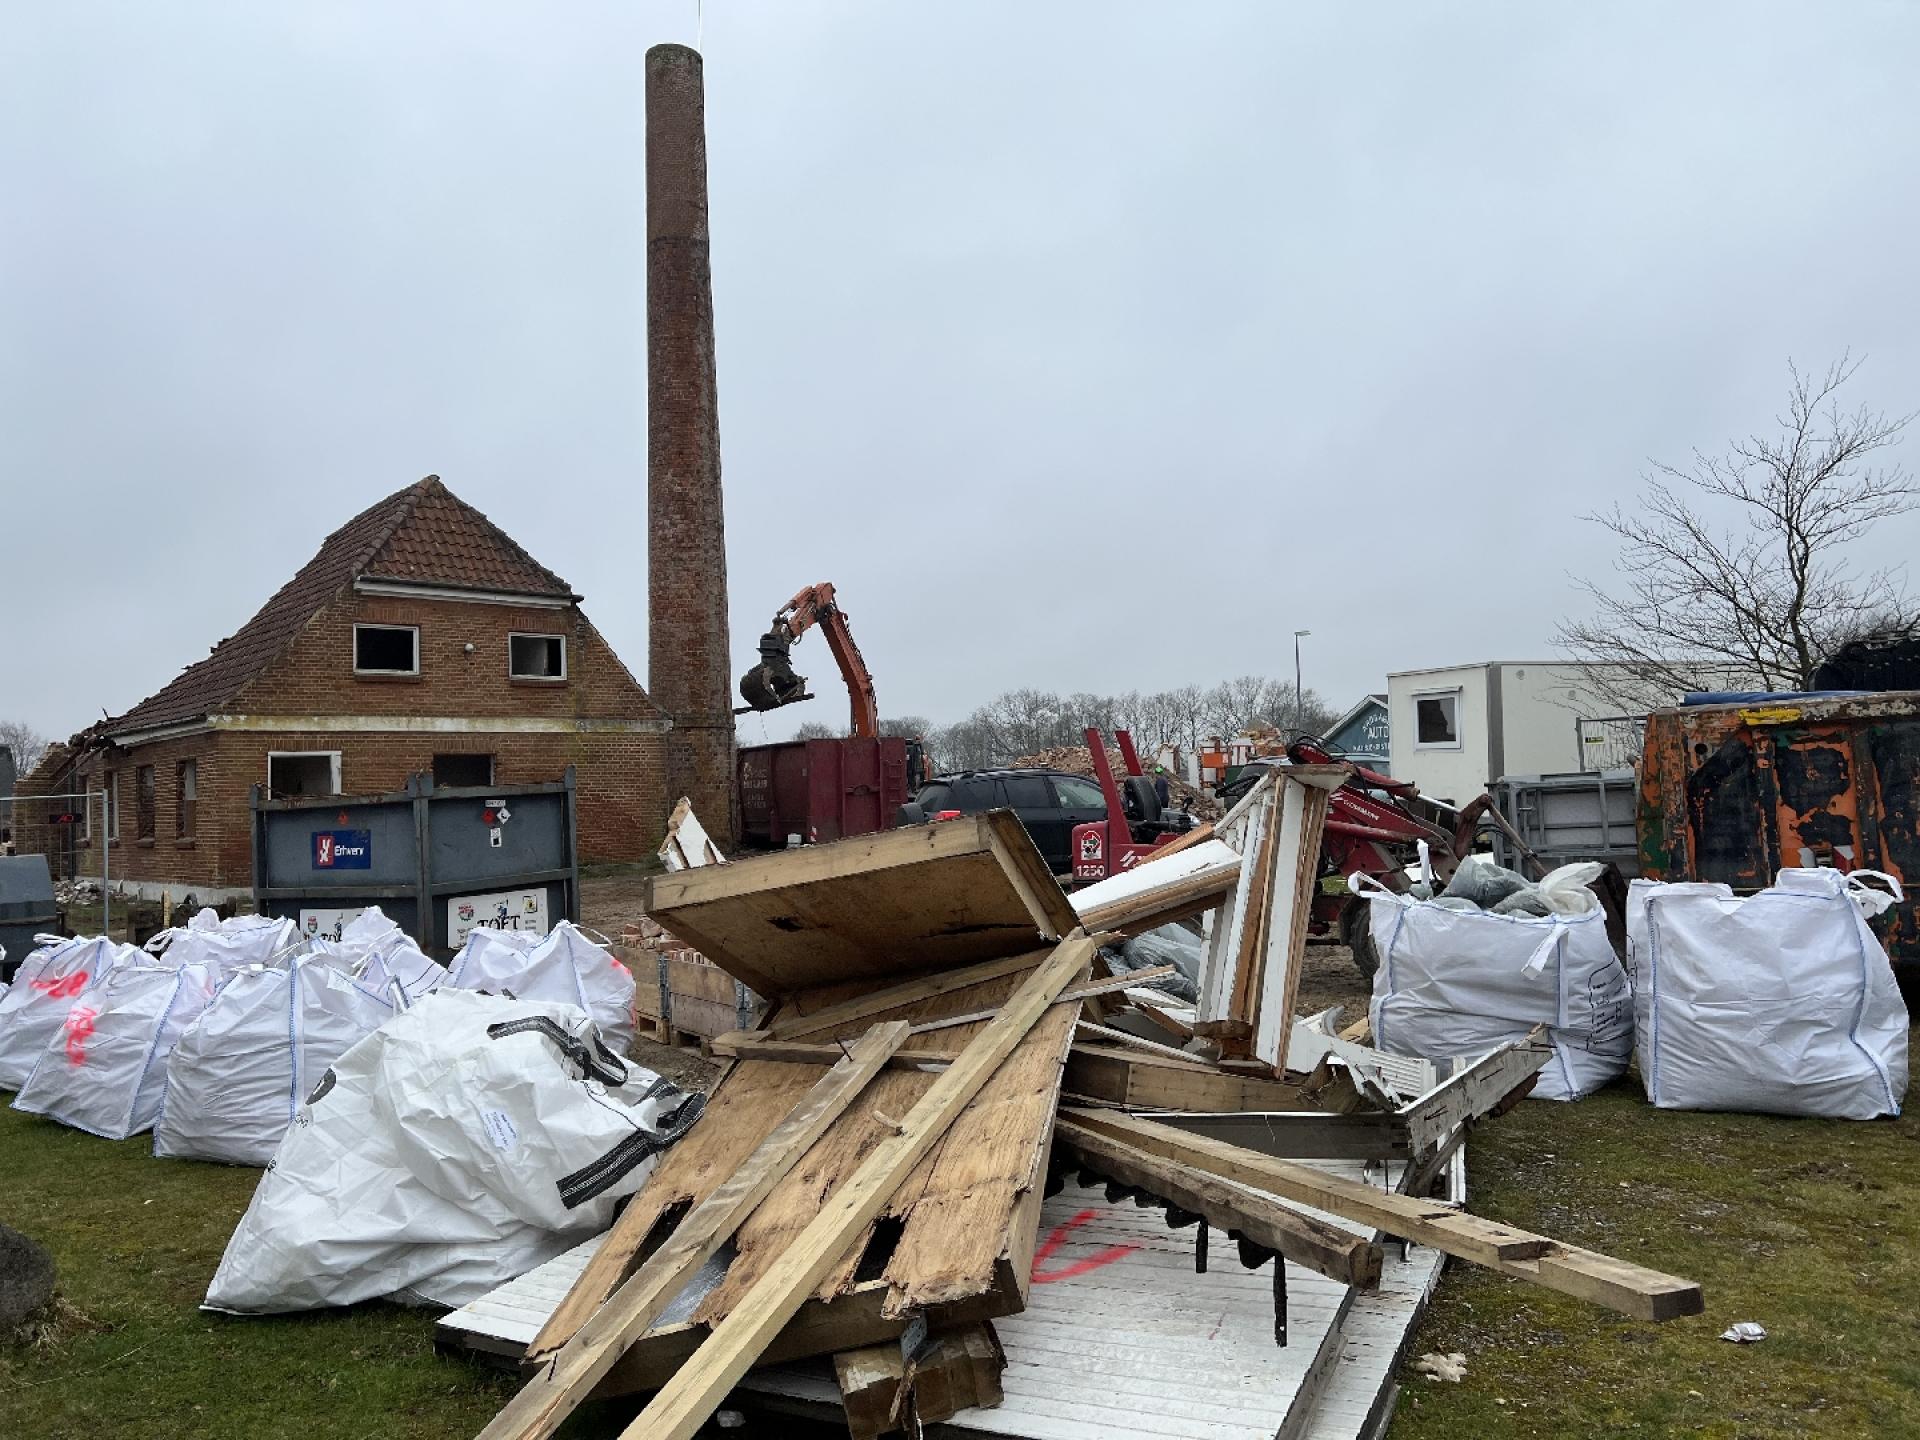 Det gamle mejeri i Stenderup-Krogager har undergået en selektiv nedrivning, hvor brugbare materialer sorteres og genanvendes. Foto: Billund Kommune